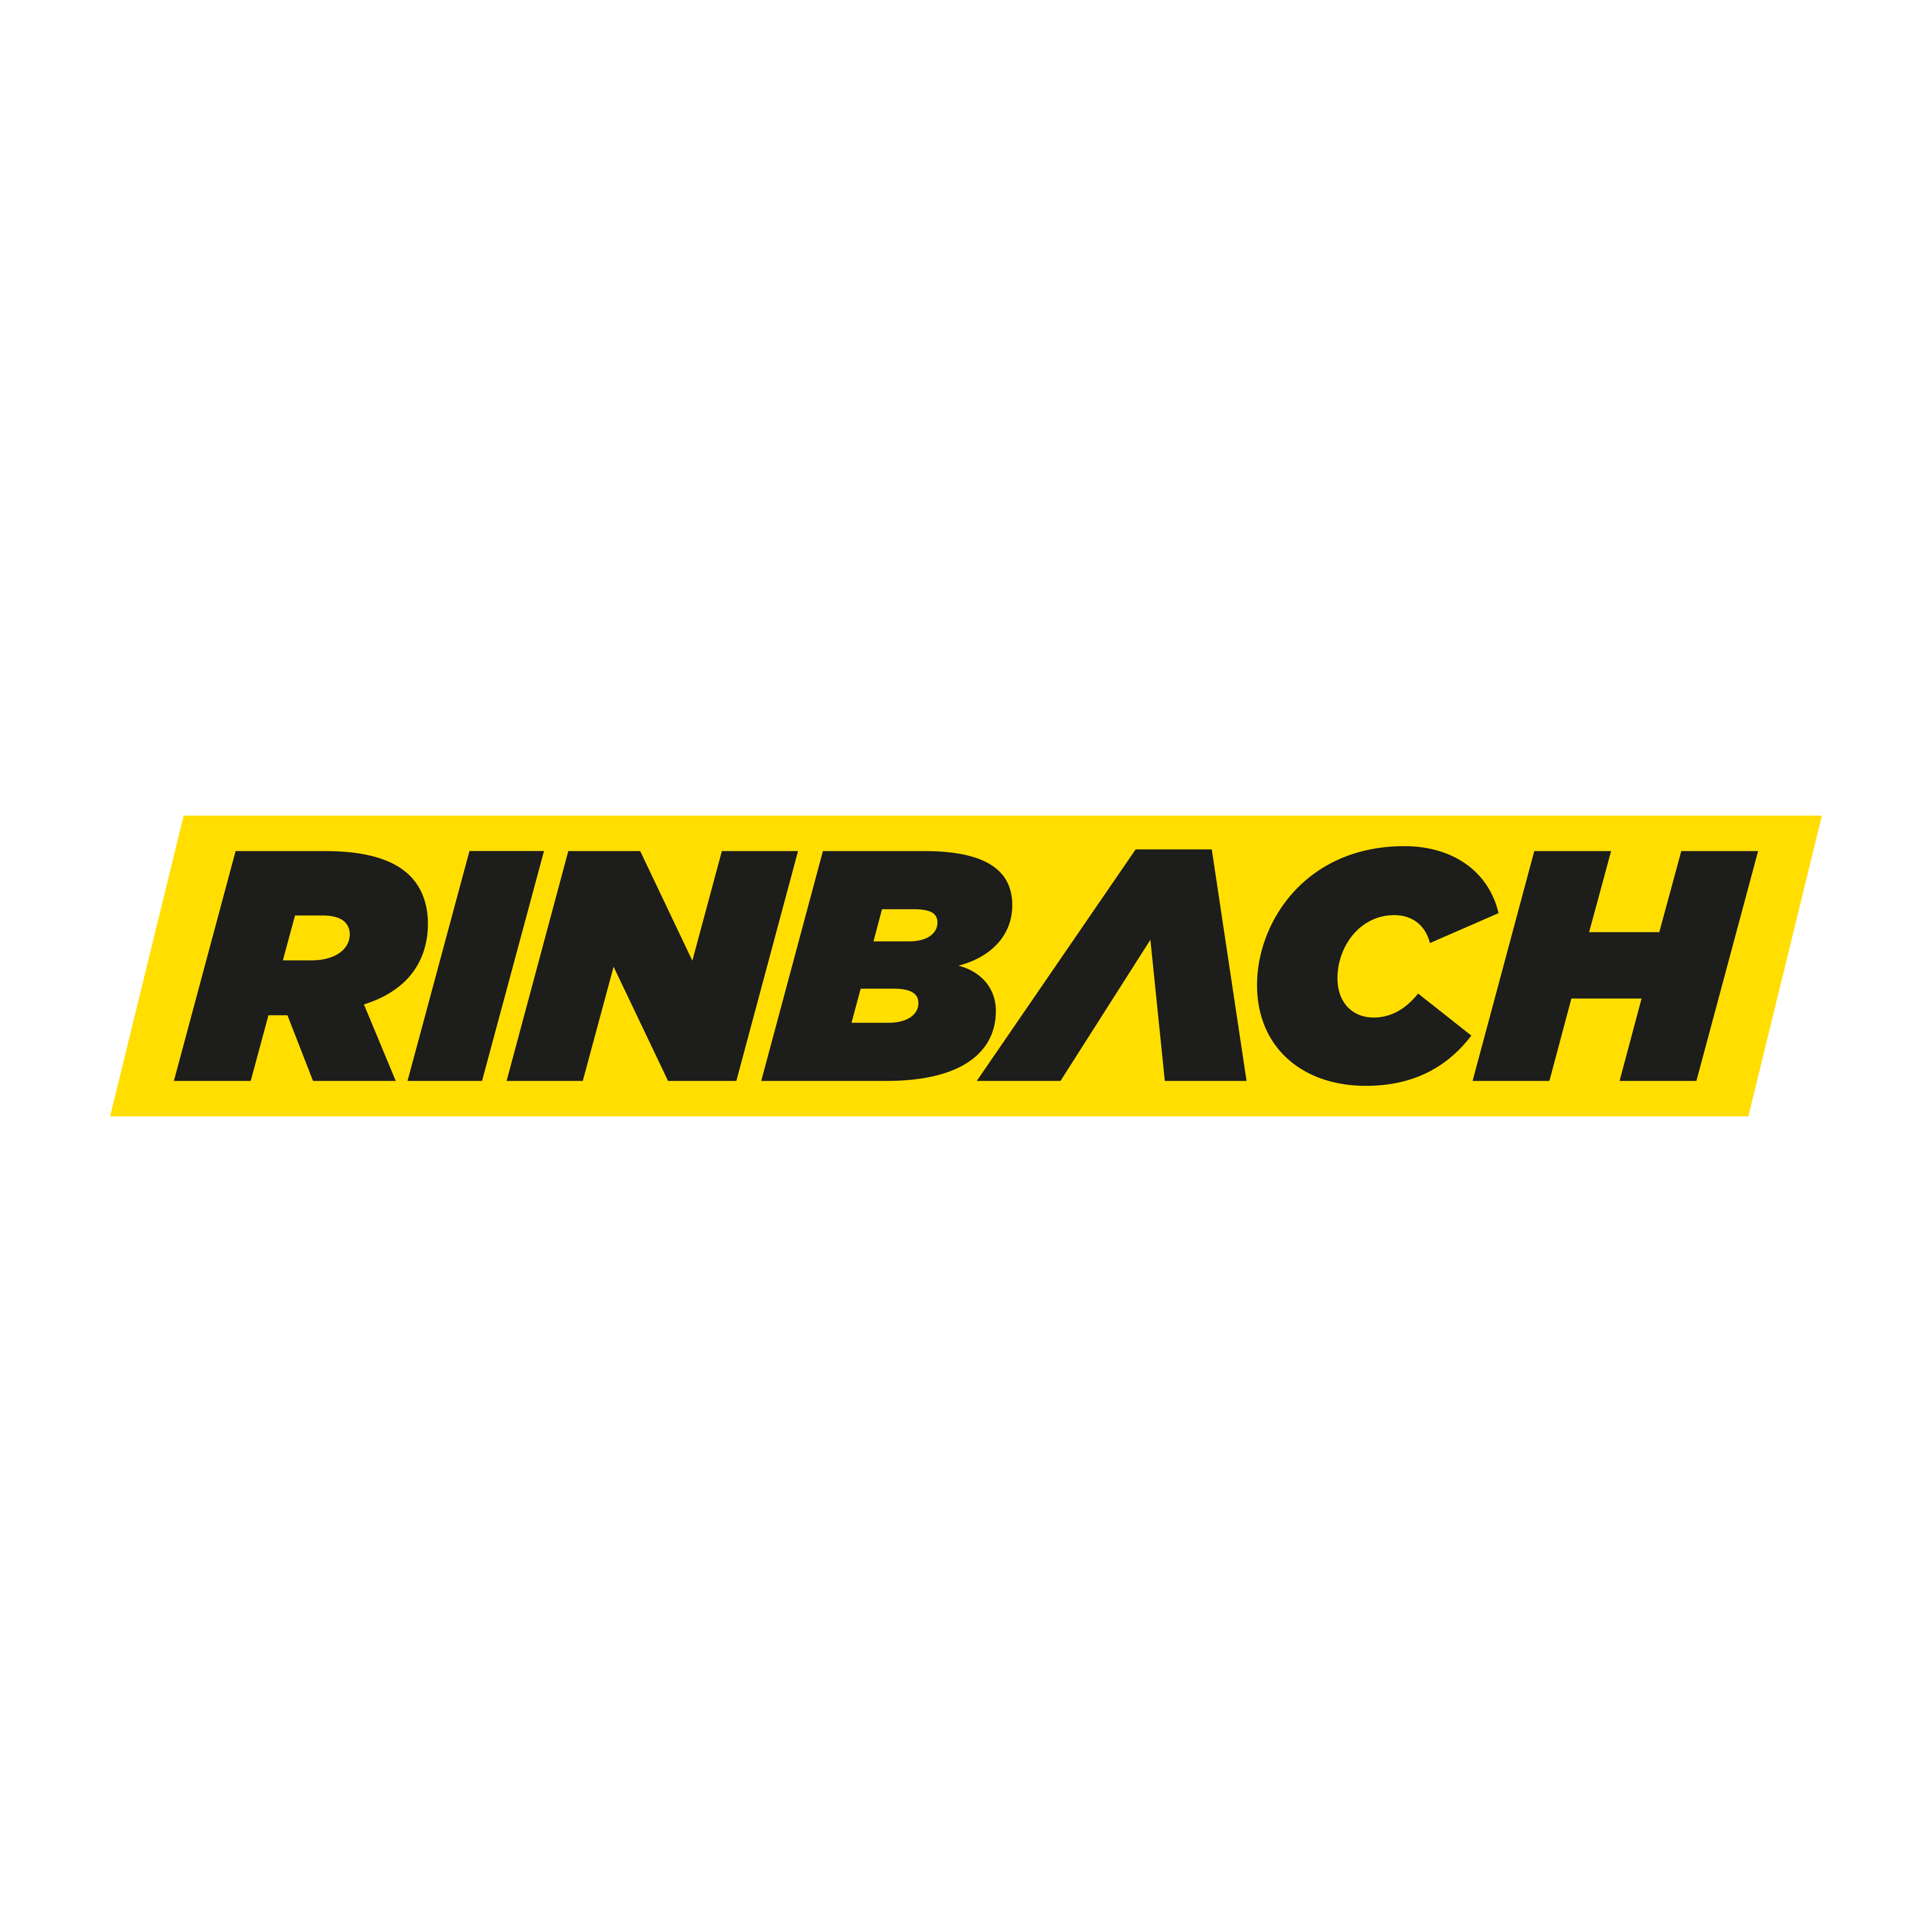 RINBACH.COM